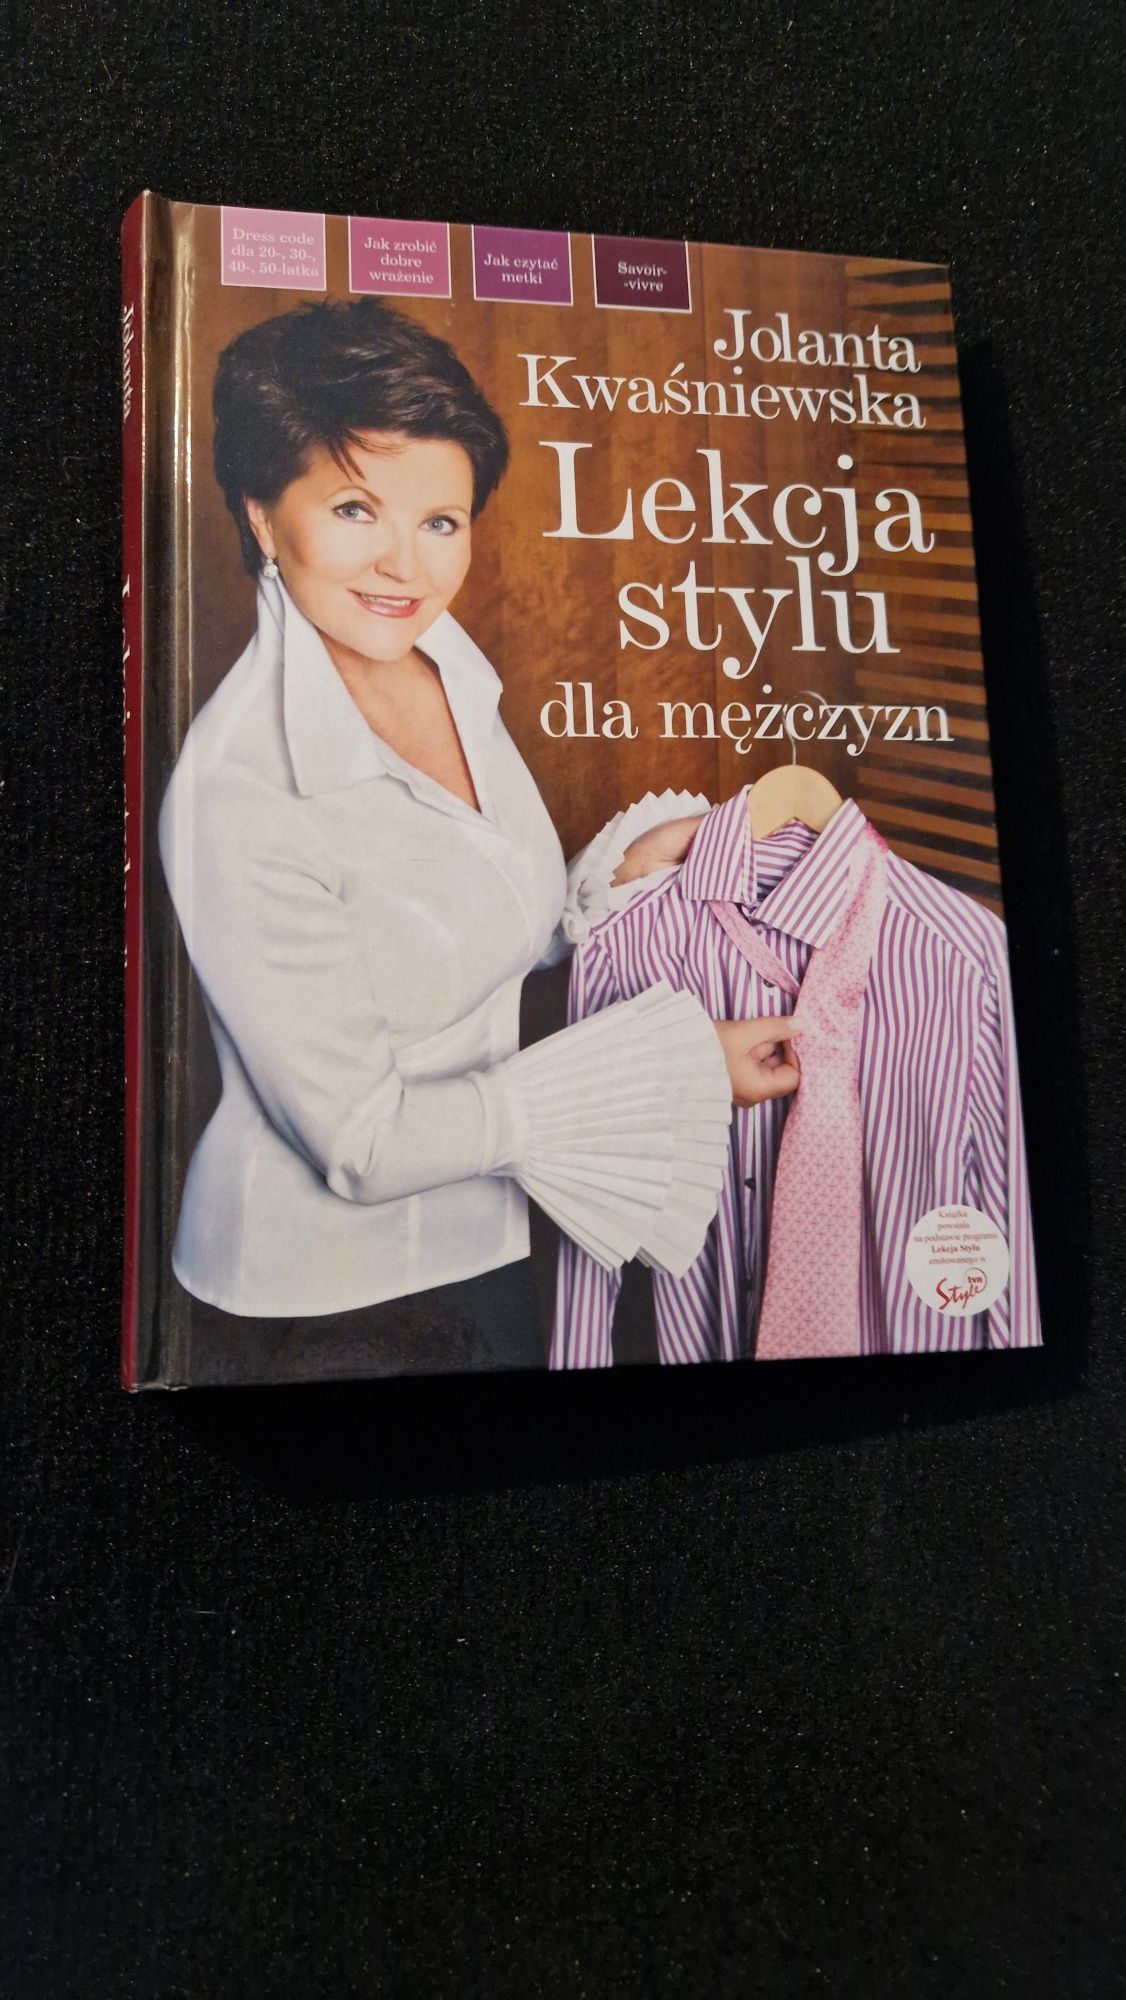 Książka Jolanty Kwaśniewskiej „Lekcja stylu” 
Stan idealn